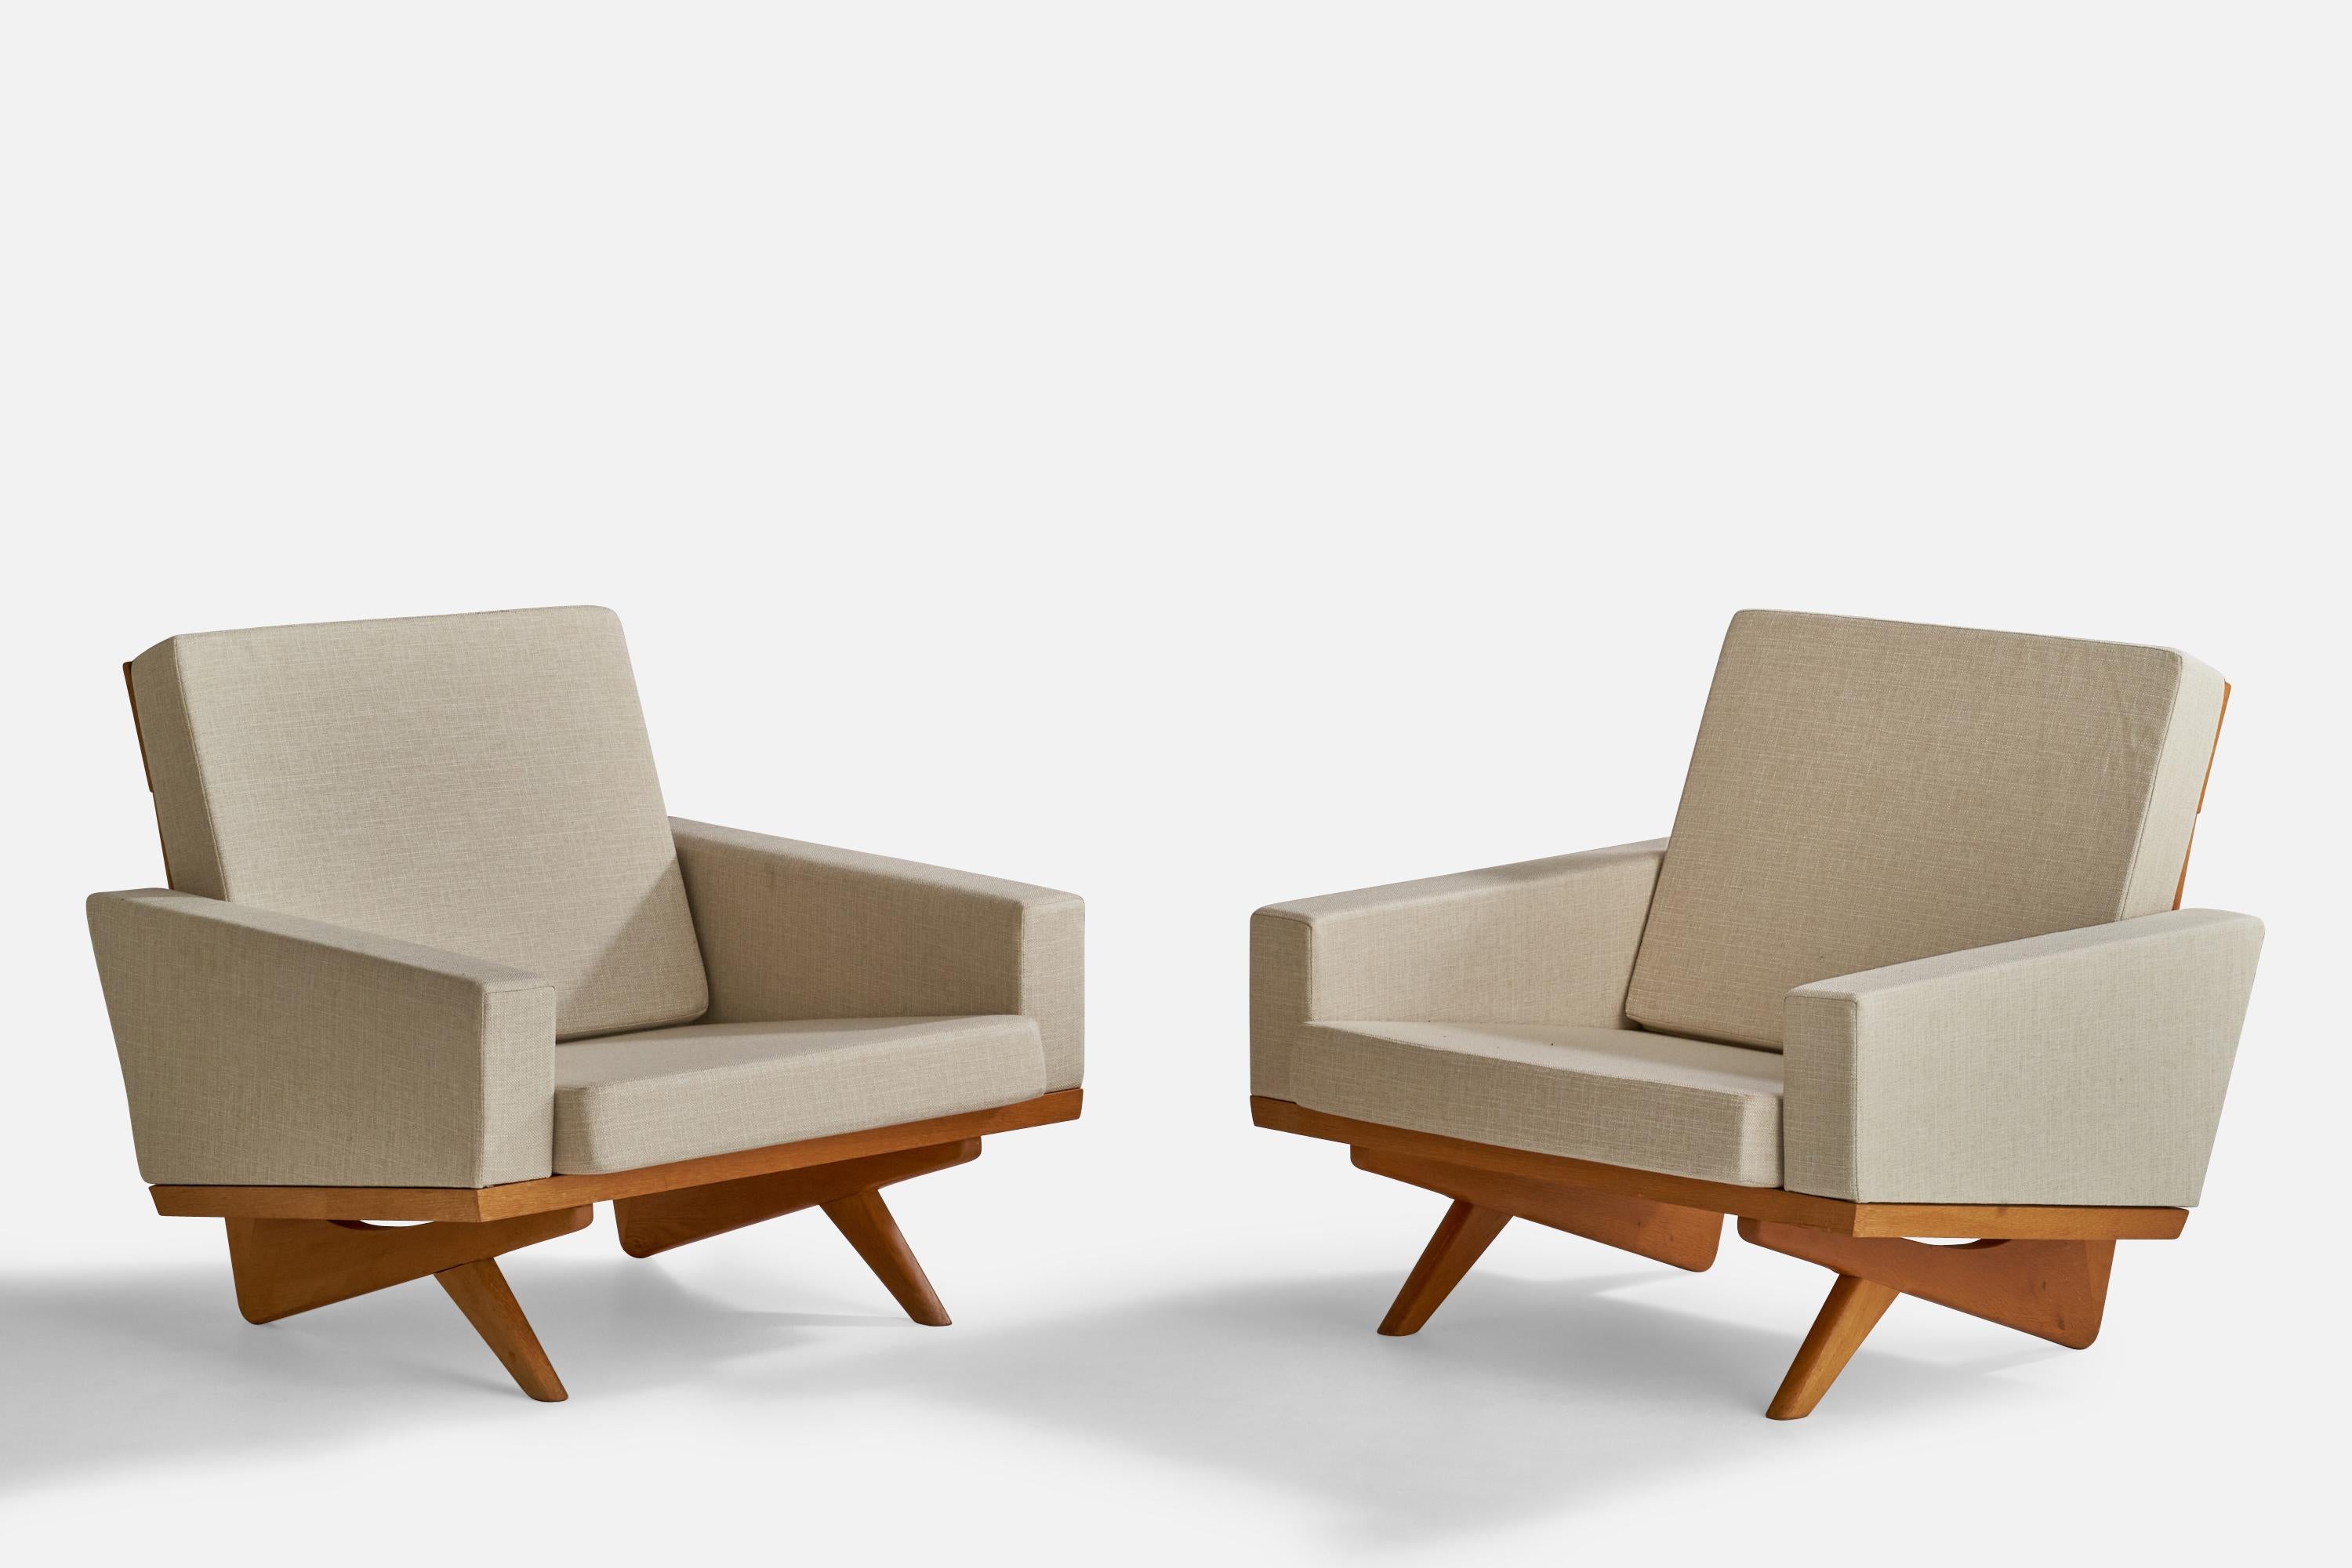 Paire de chaises de salon en chêne et en tissu blanc, conçues par Georg Whiting en 1964 et produites par Vejen Polstermøbelfabrik, Danemark, années 1960.

Hauteur d'assise : 13,75